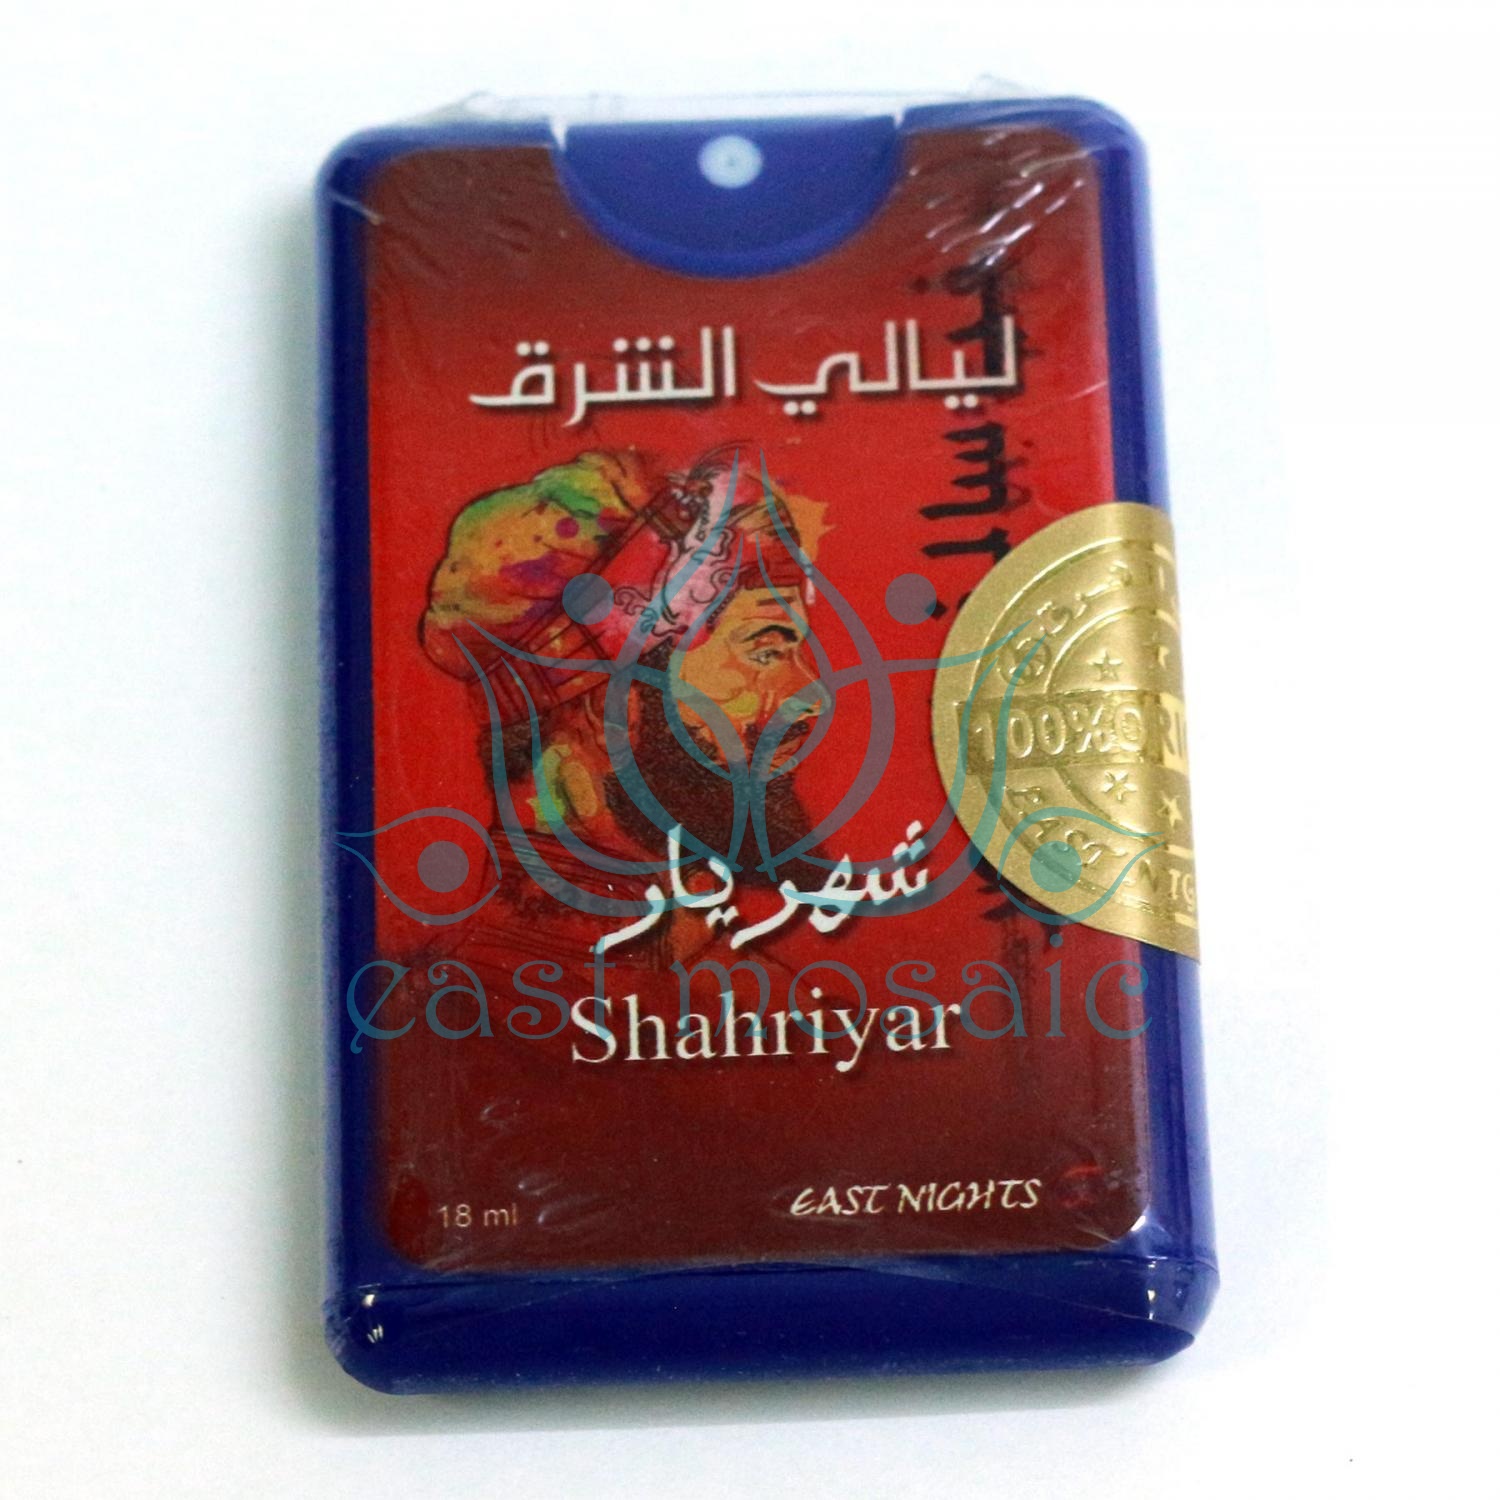 Масляные духи в упаковке спрей-покет Shahriyar